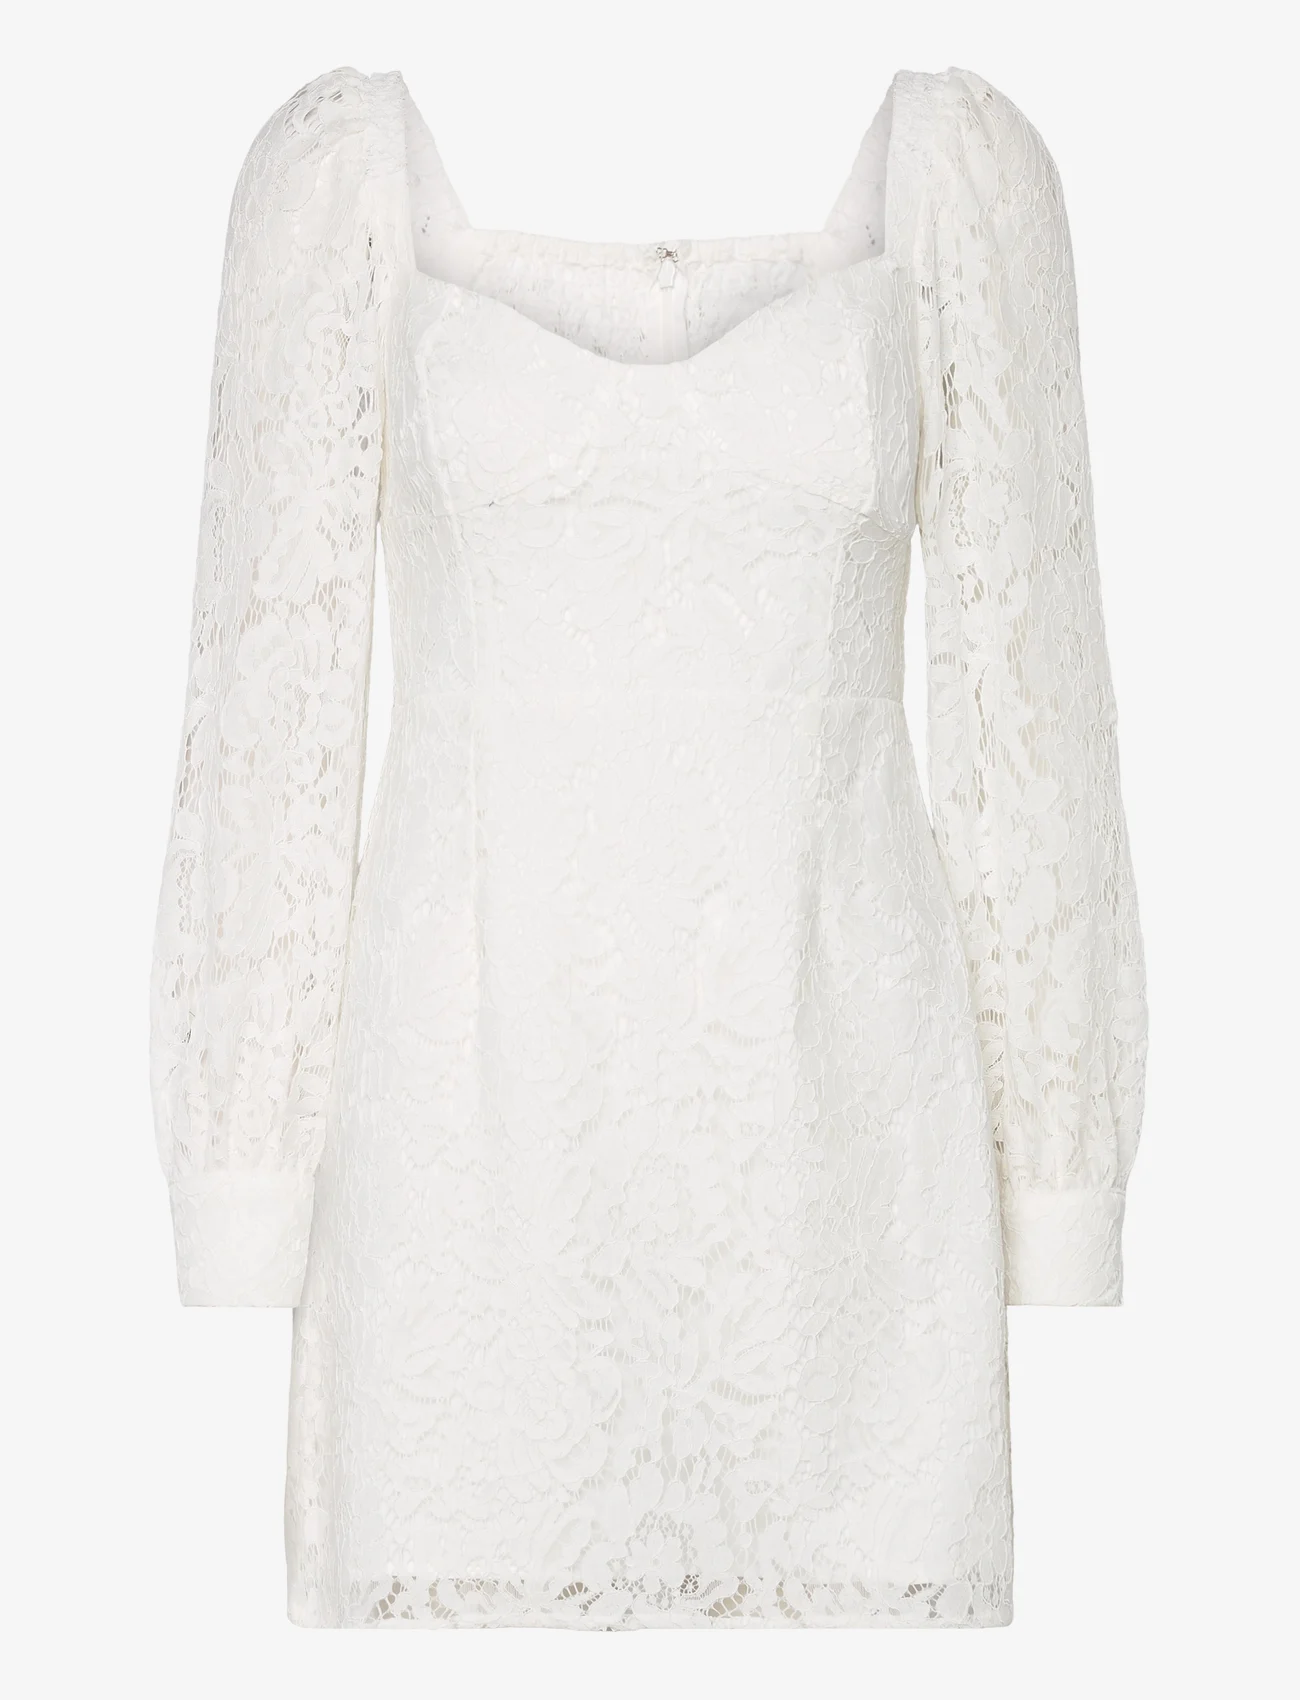 French Connection - ATREENA LACE MINI DRESS - sukienki letnie - summer white - 0